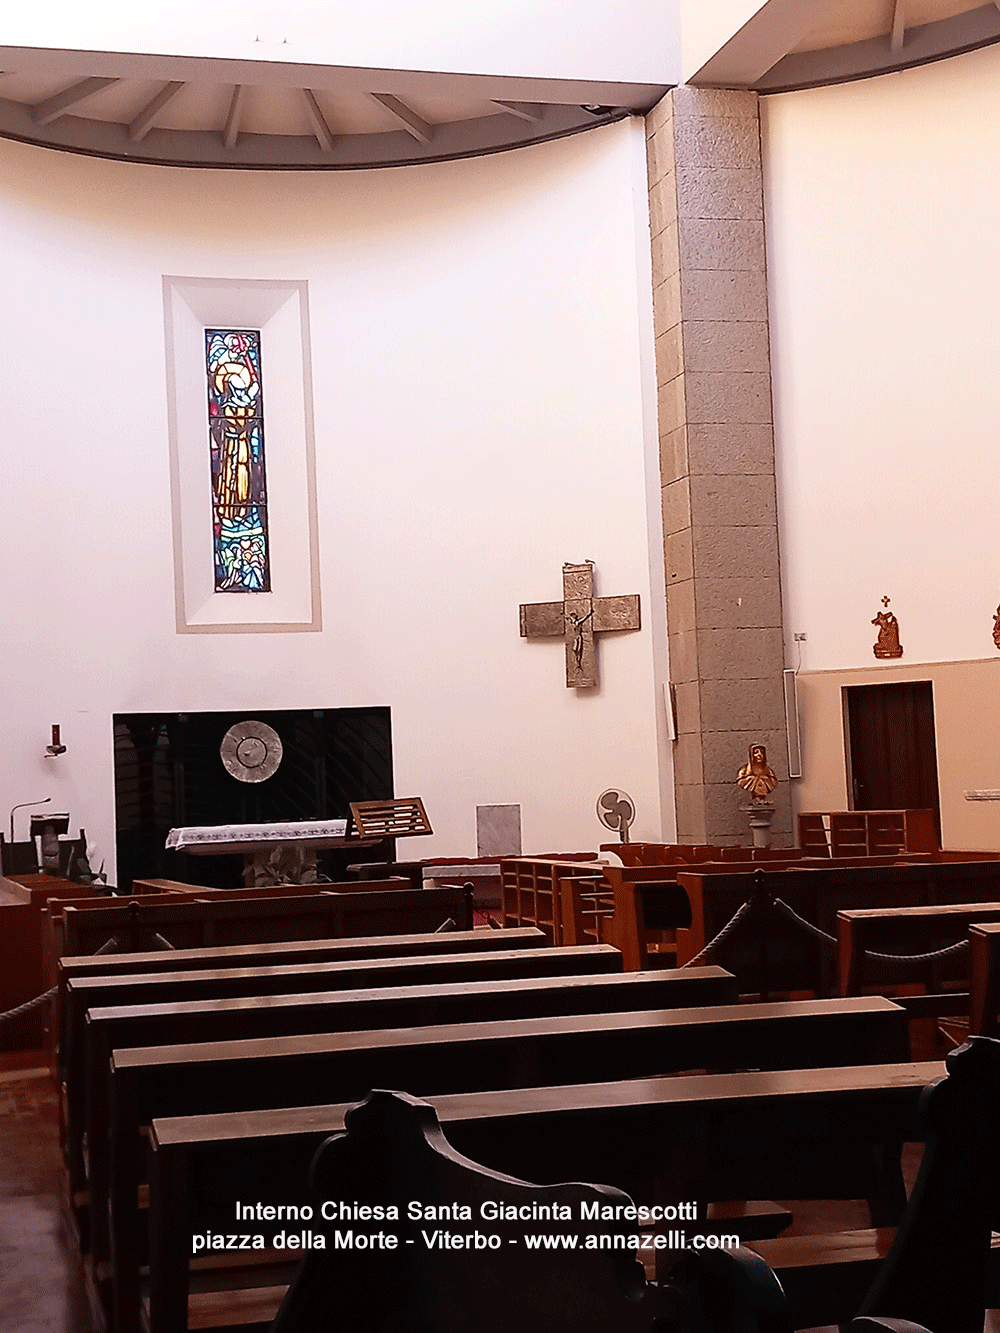 interno chiesa santa giacinta marescotti piazza della morte info e foto anna zelli